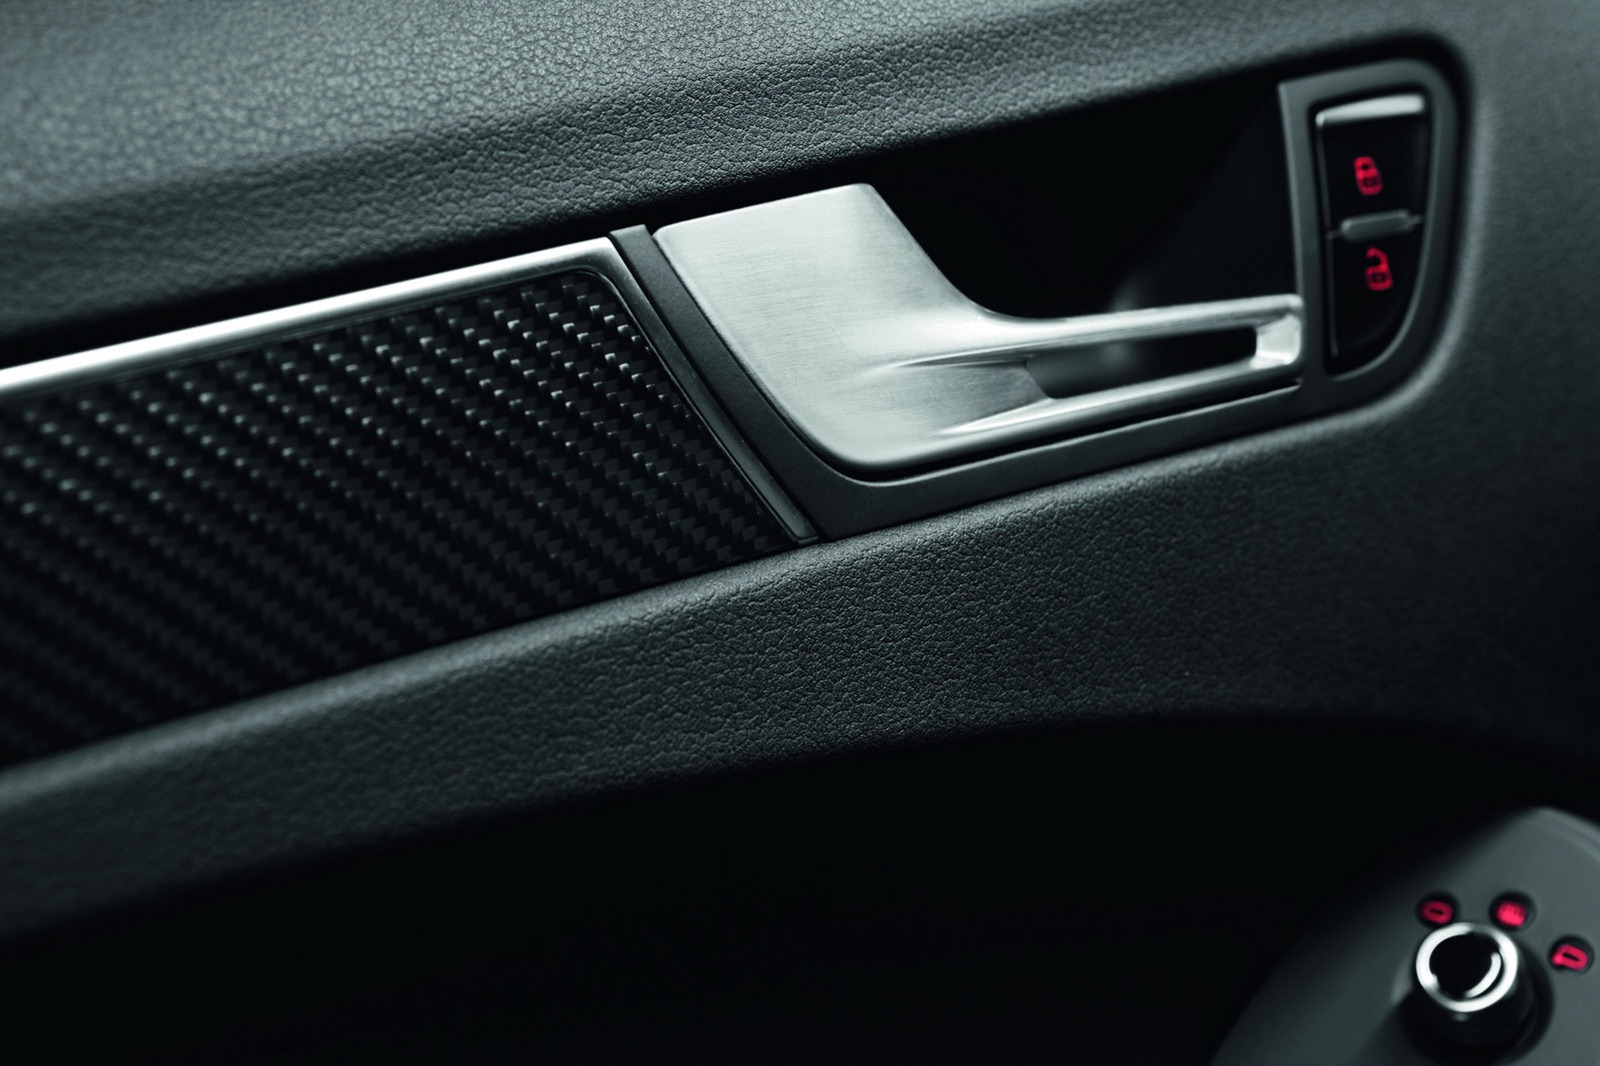 [2013-Audi-RS4-Avant-34%255B2%255D.jpg]